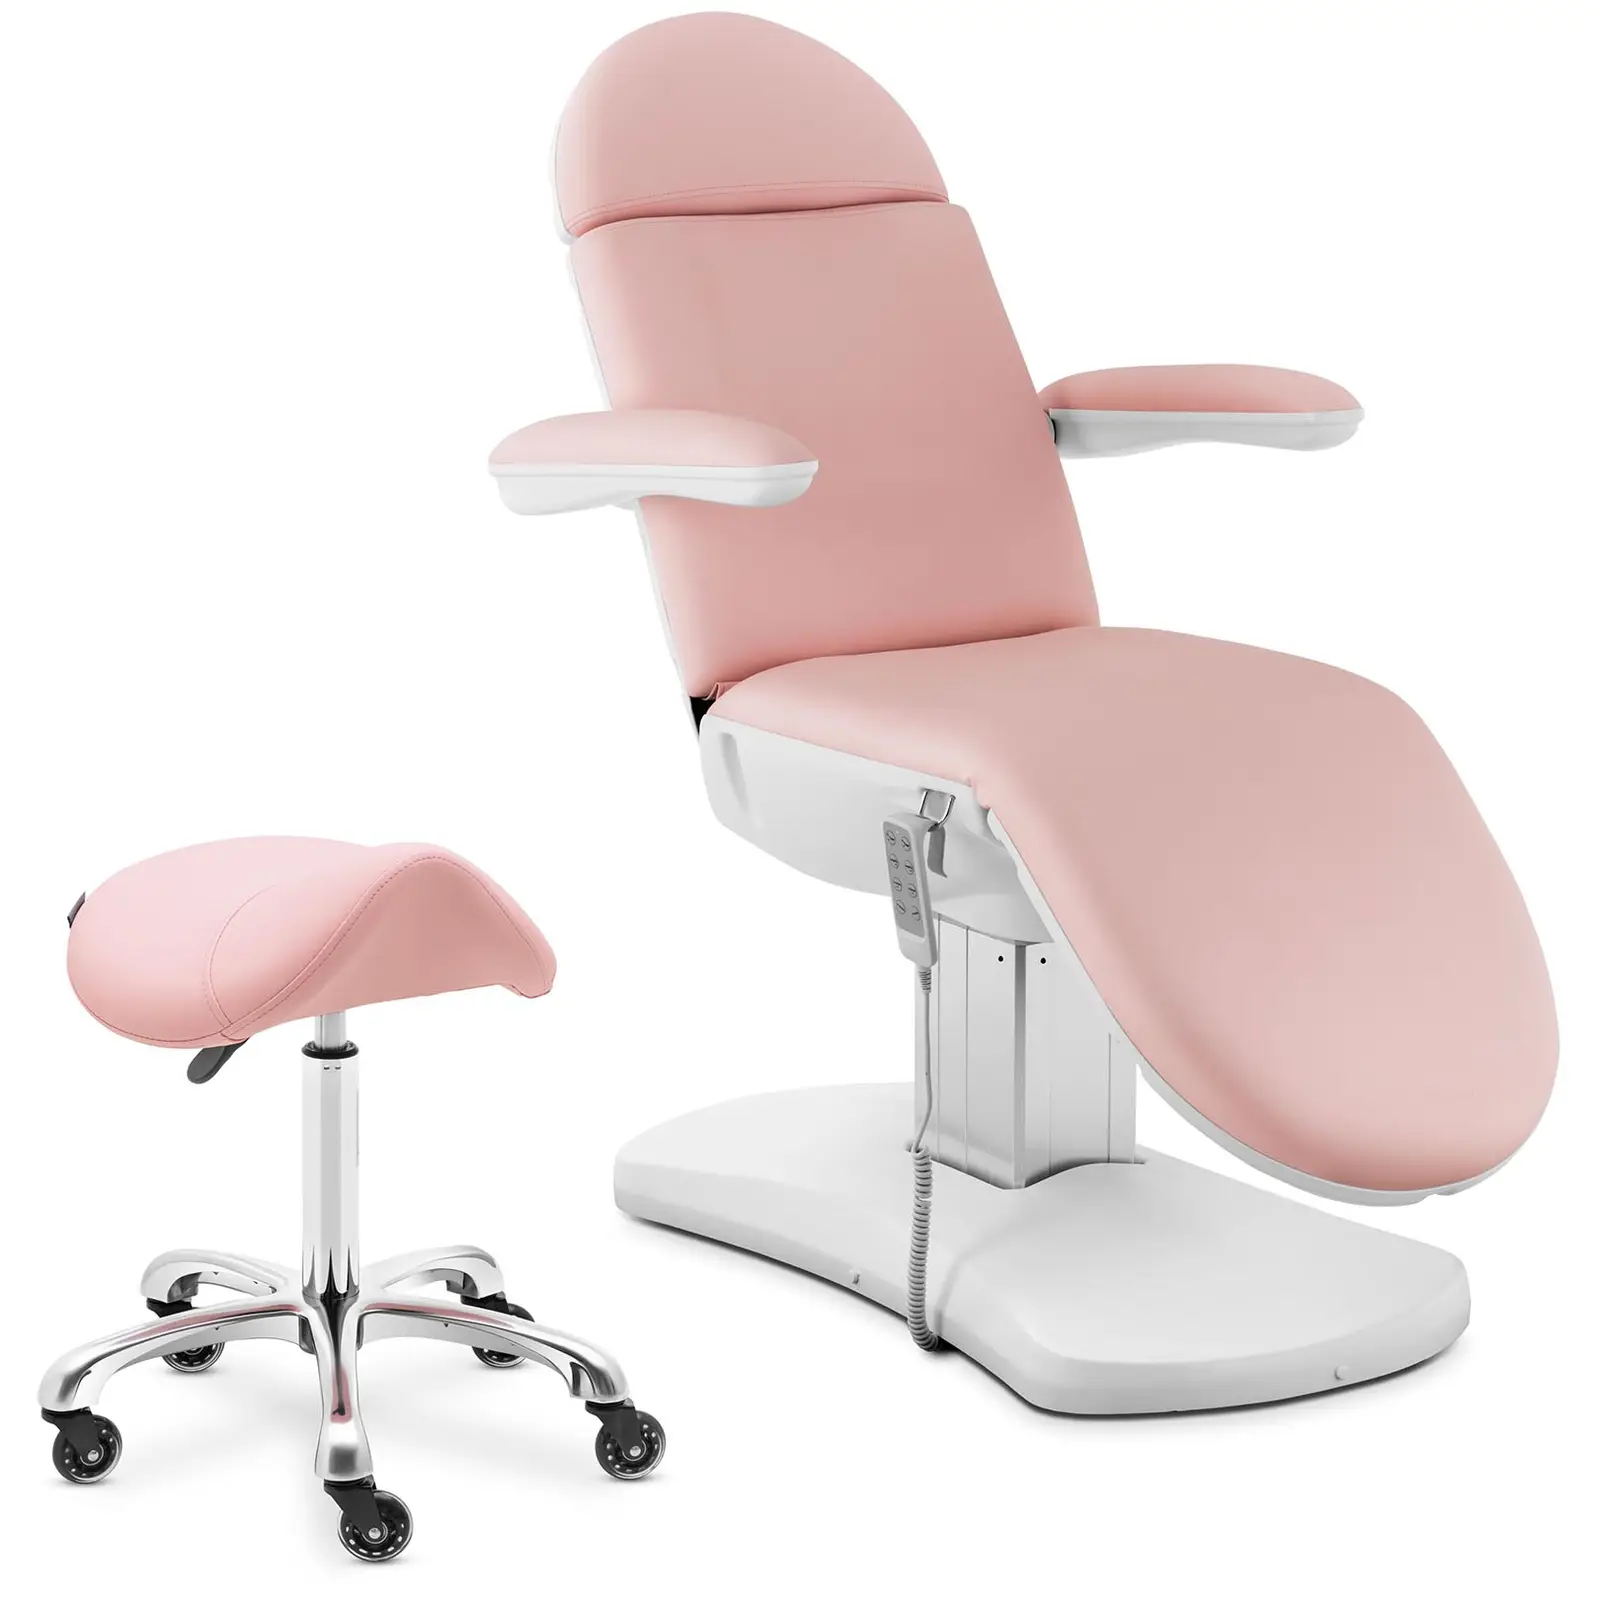 Fotel kosmetyczny i krzesło siodłowe - różowy, biały